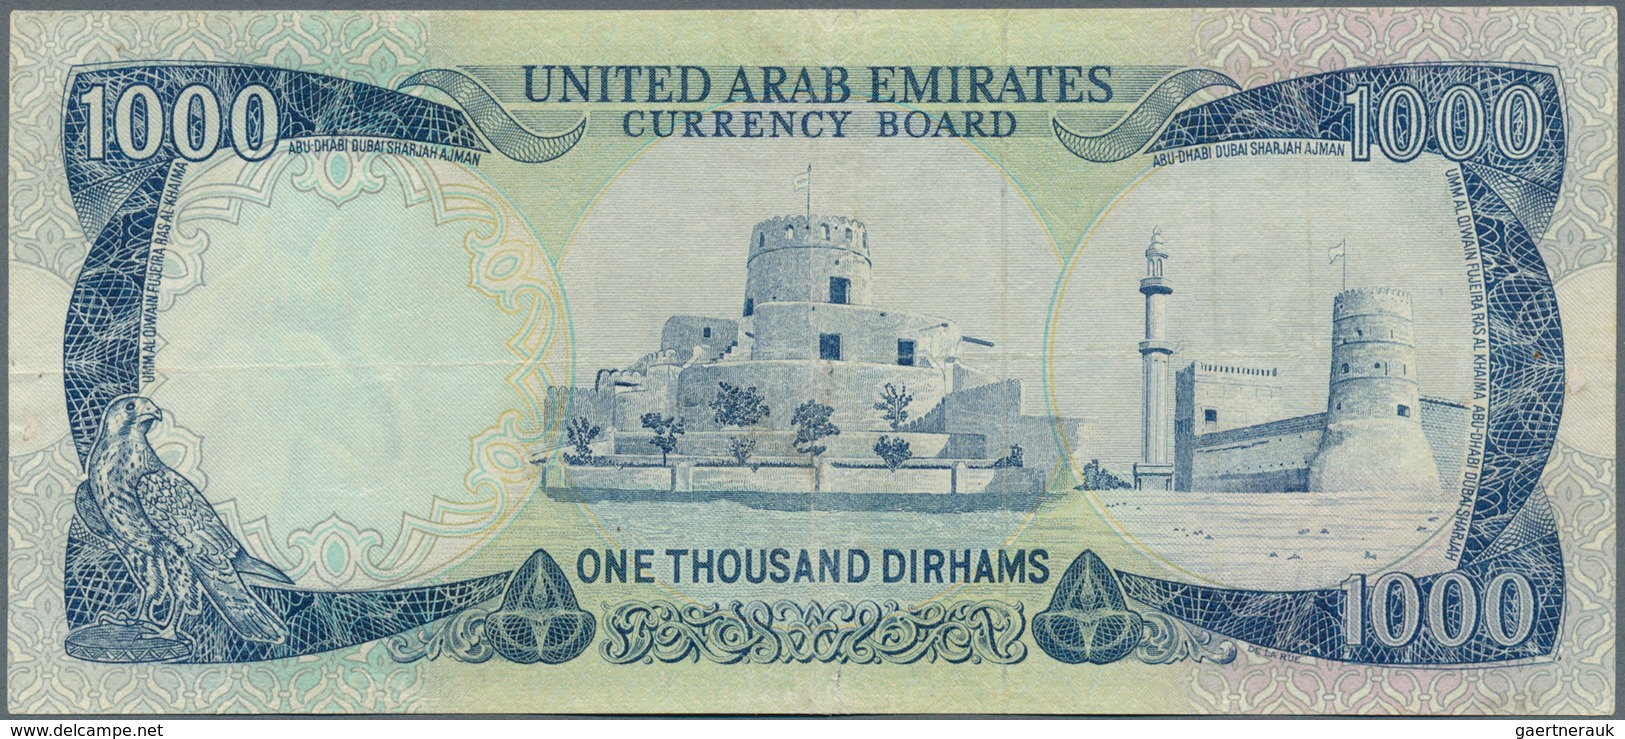 02574 United Arab Emirates / Vereinigte Arabische Emirate: Rare Note 1000 Dirhams ND(1976) P. 6, Light Fol - Emiratos Arabes Unidos